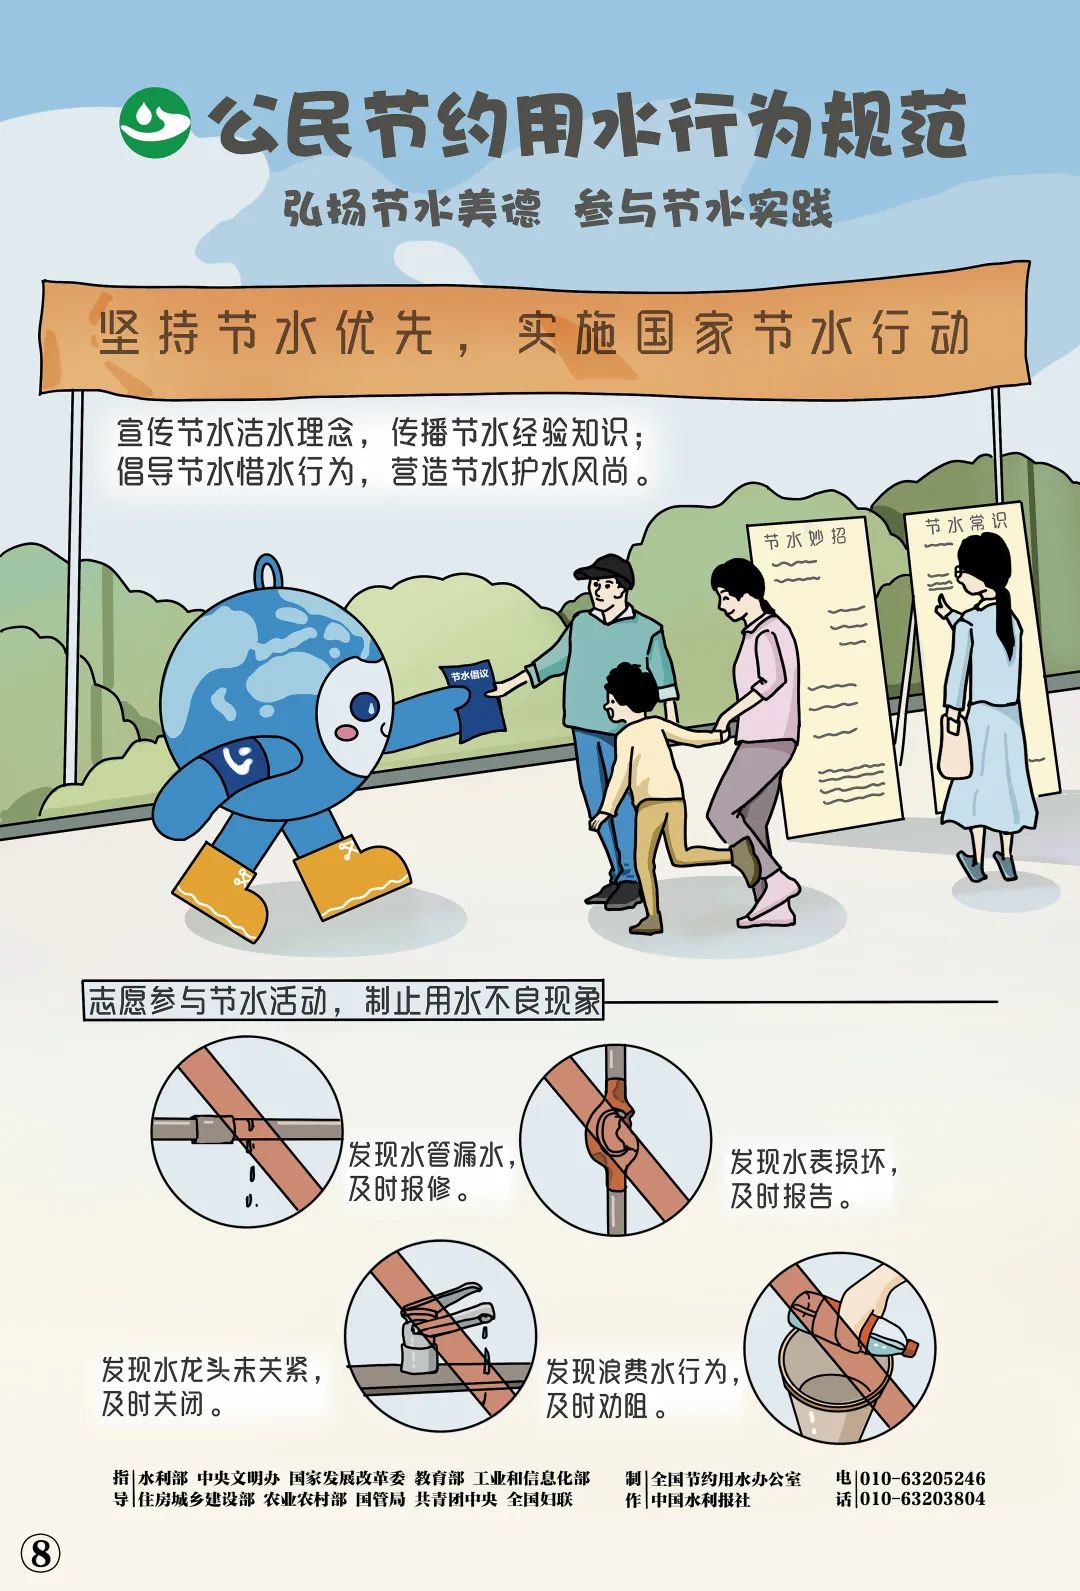 权威发布 | 《公民节约用水行为规范》主题海报